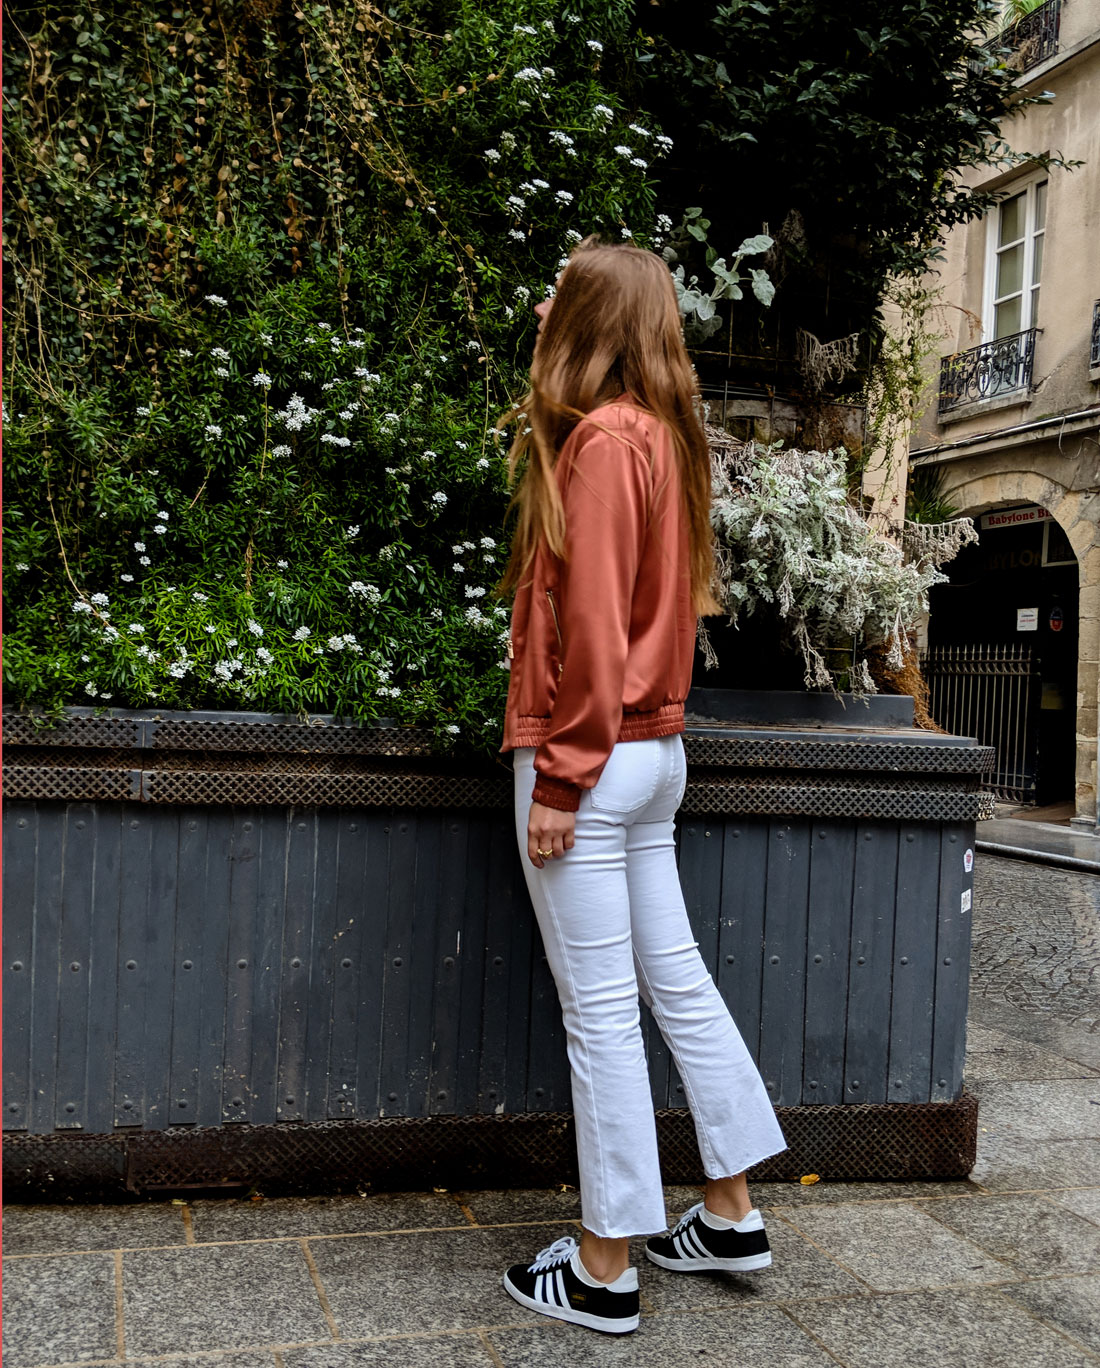 Le cas du pantalon blanc #ConcoursInside - CamilleG